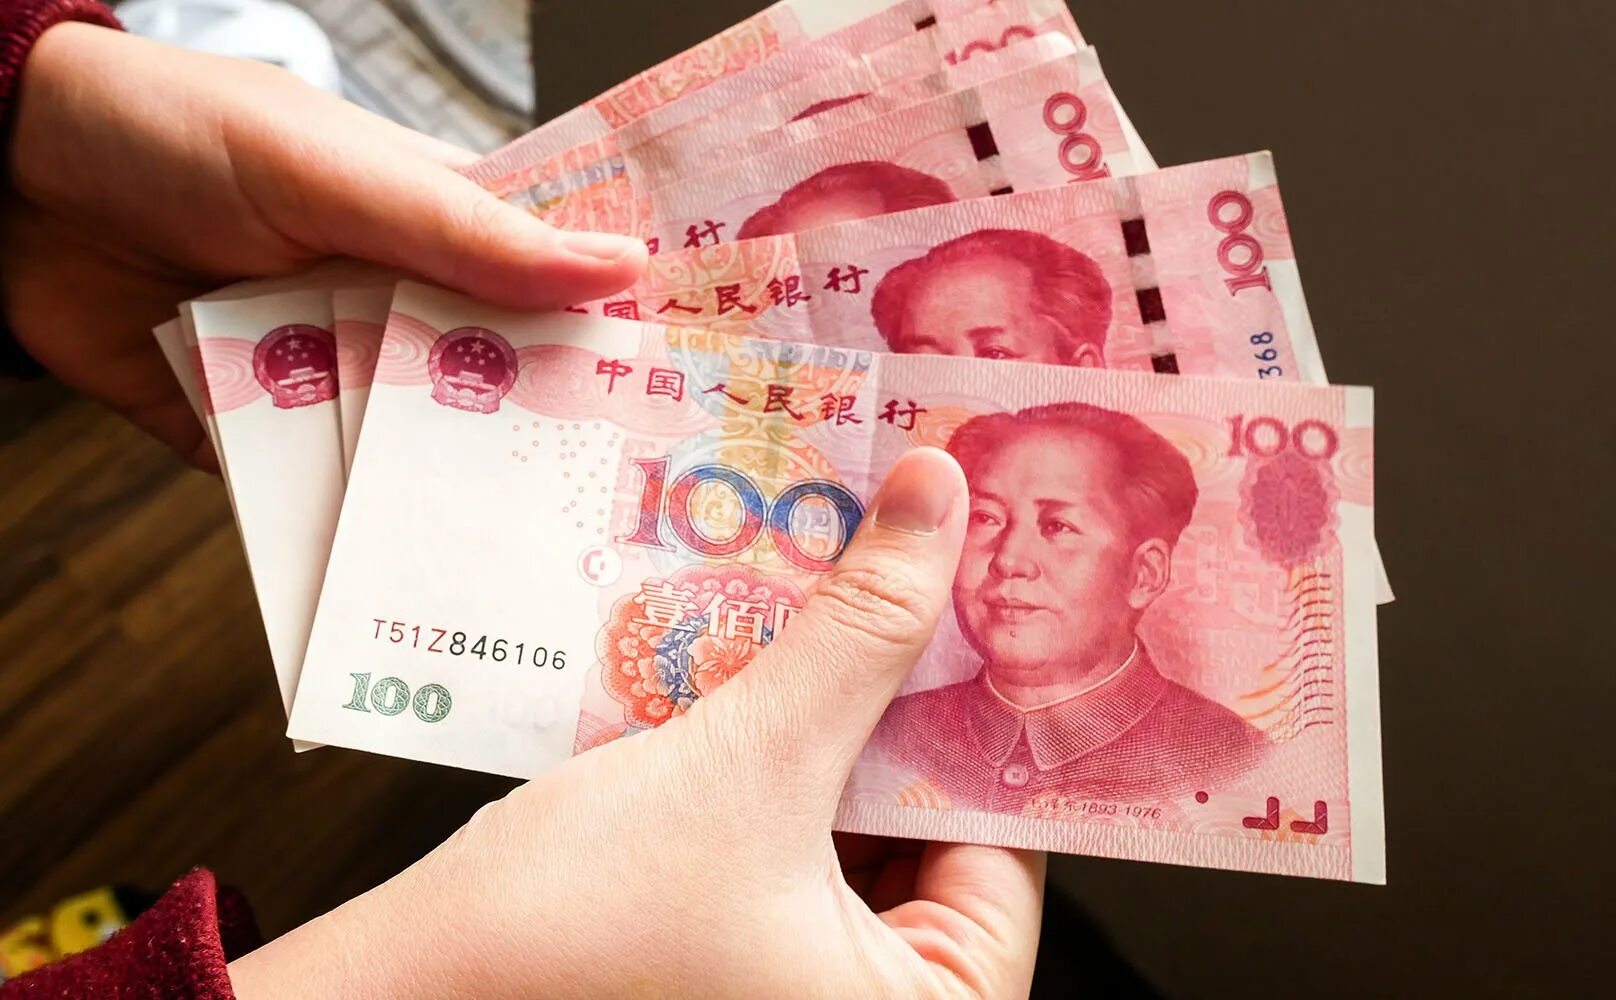 Юань иностранной валюты. Деньги Китая. Китайский юань. Современные китайские деньги. Юань (валюта).